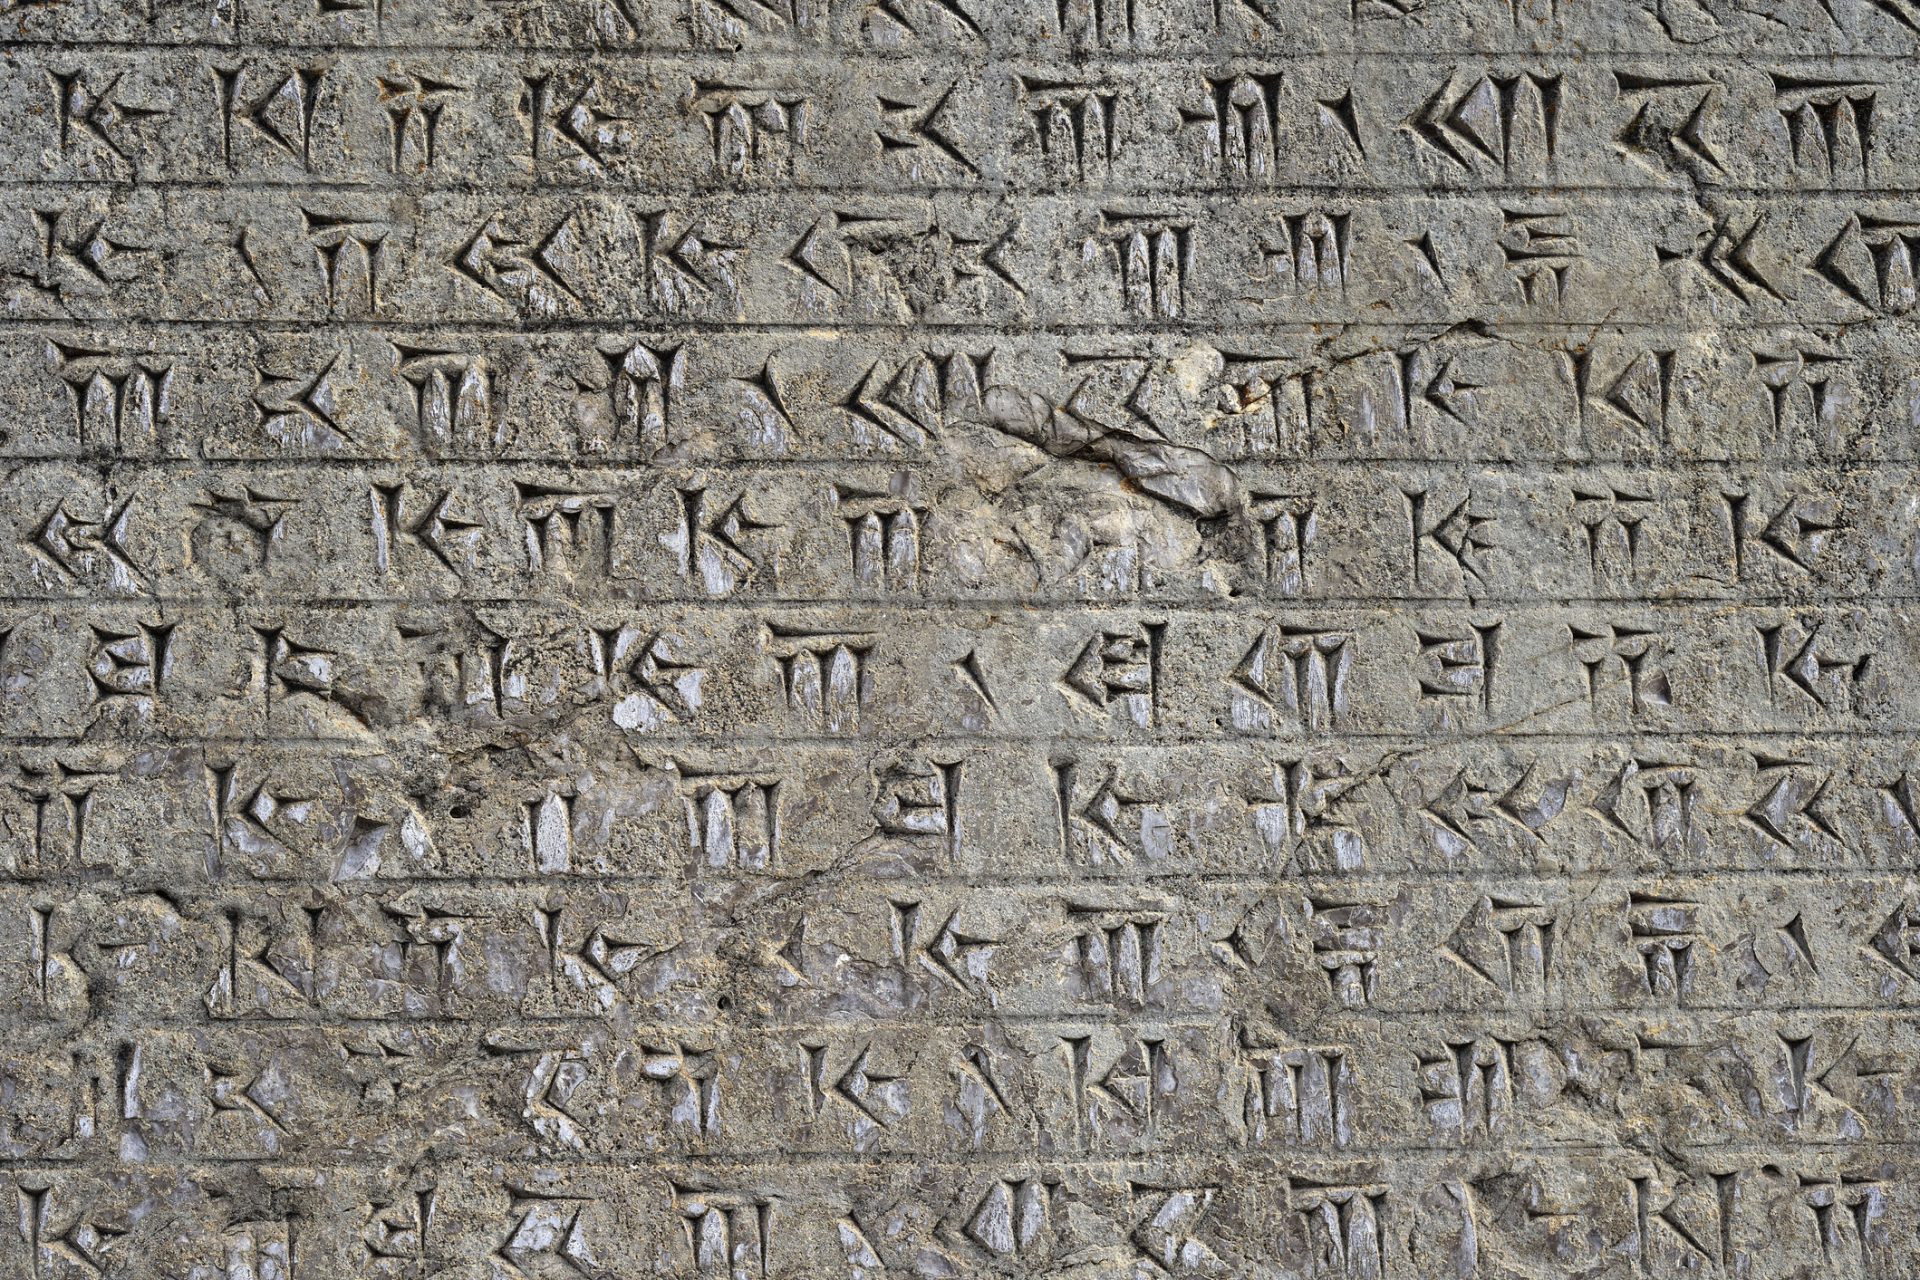 La scoperta di un'antica lingua che racchiude i segreti di uno dei più potenti imperi della storia